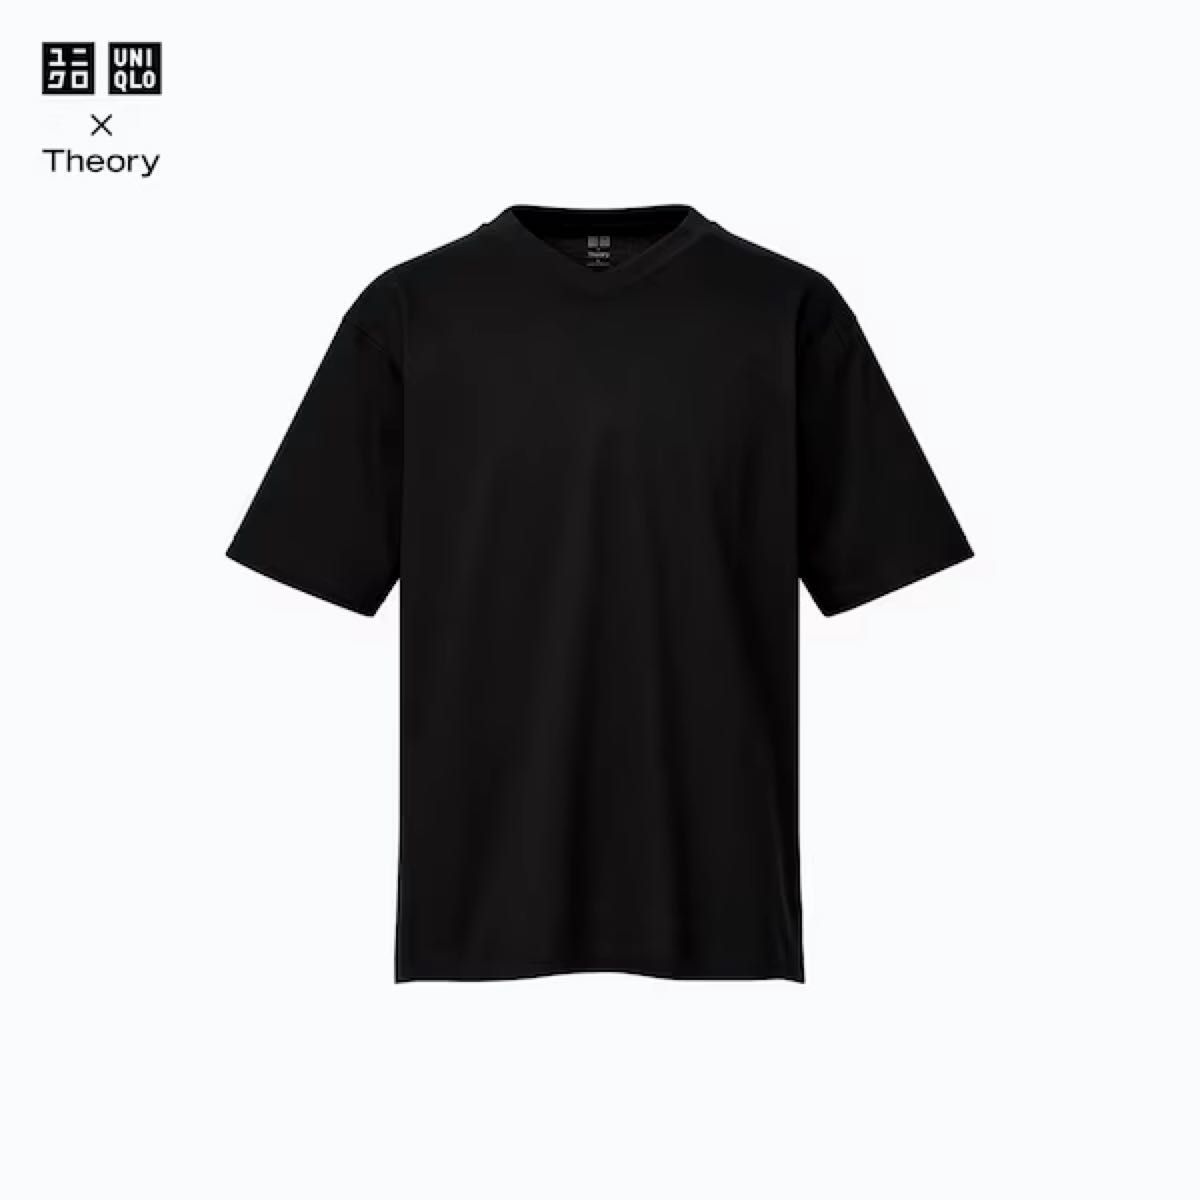 UNIQLO theory リラックスフィットVネックTシャツ XL